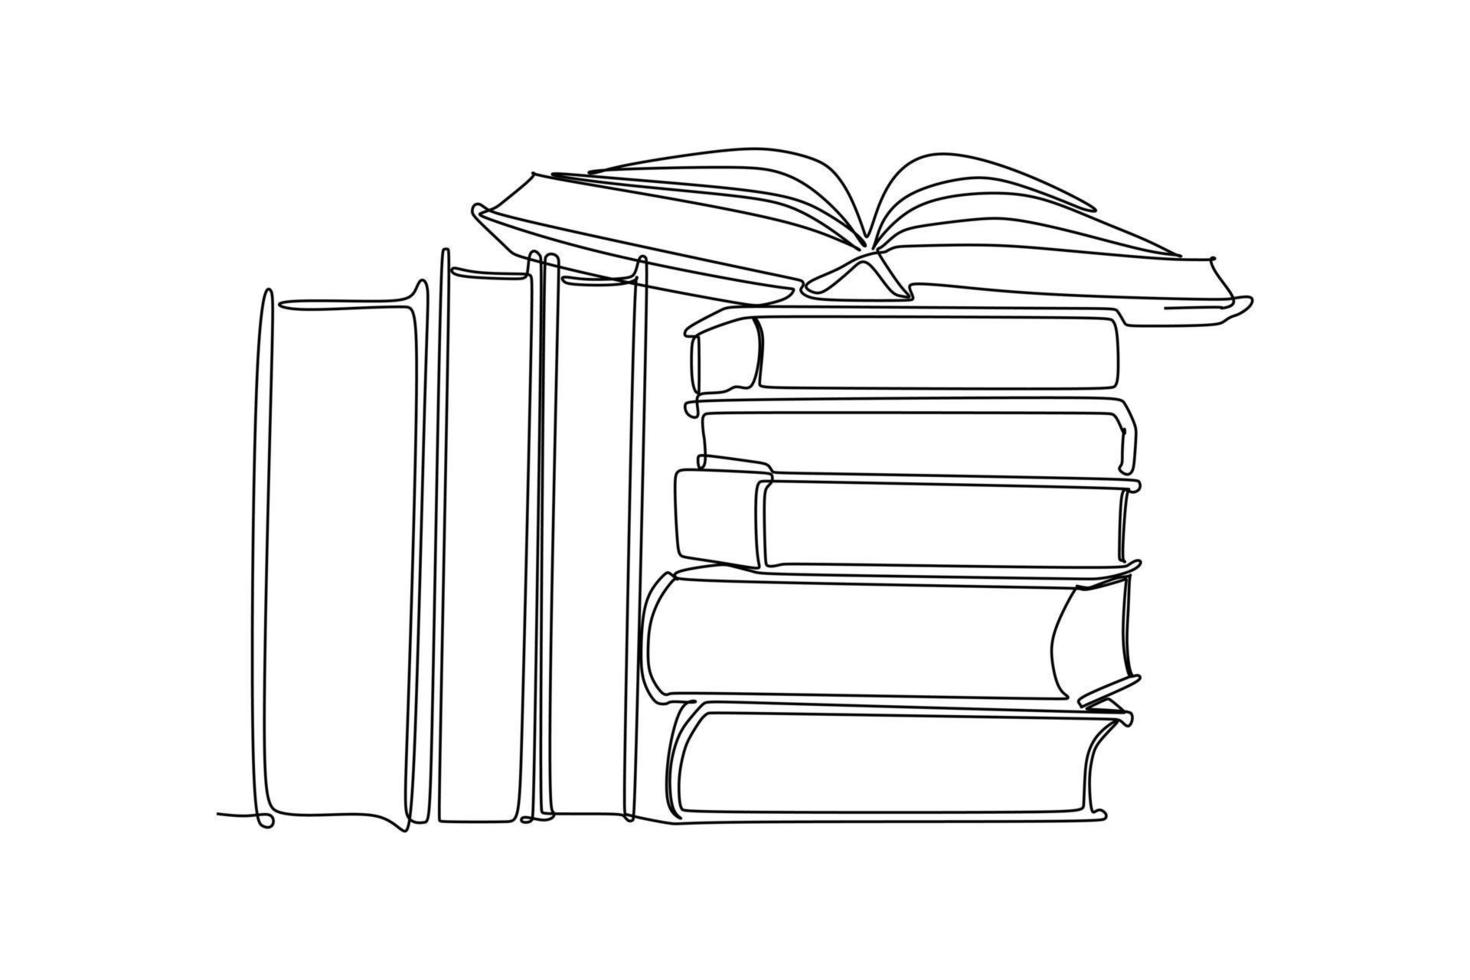 desenho de uma linha contínua de um livro aberto em uma pilha de livros. ilustração vetorial para material de educação de volta ao tema ou conceito da escola vetor